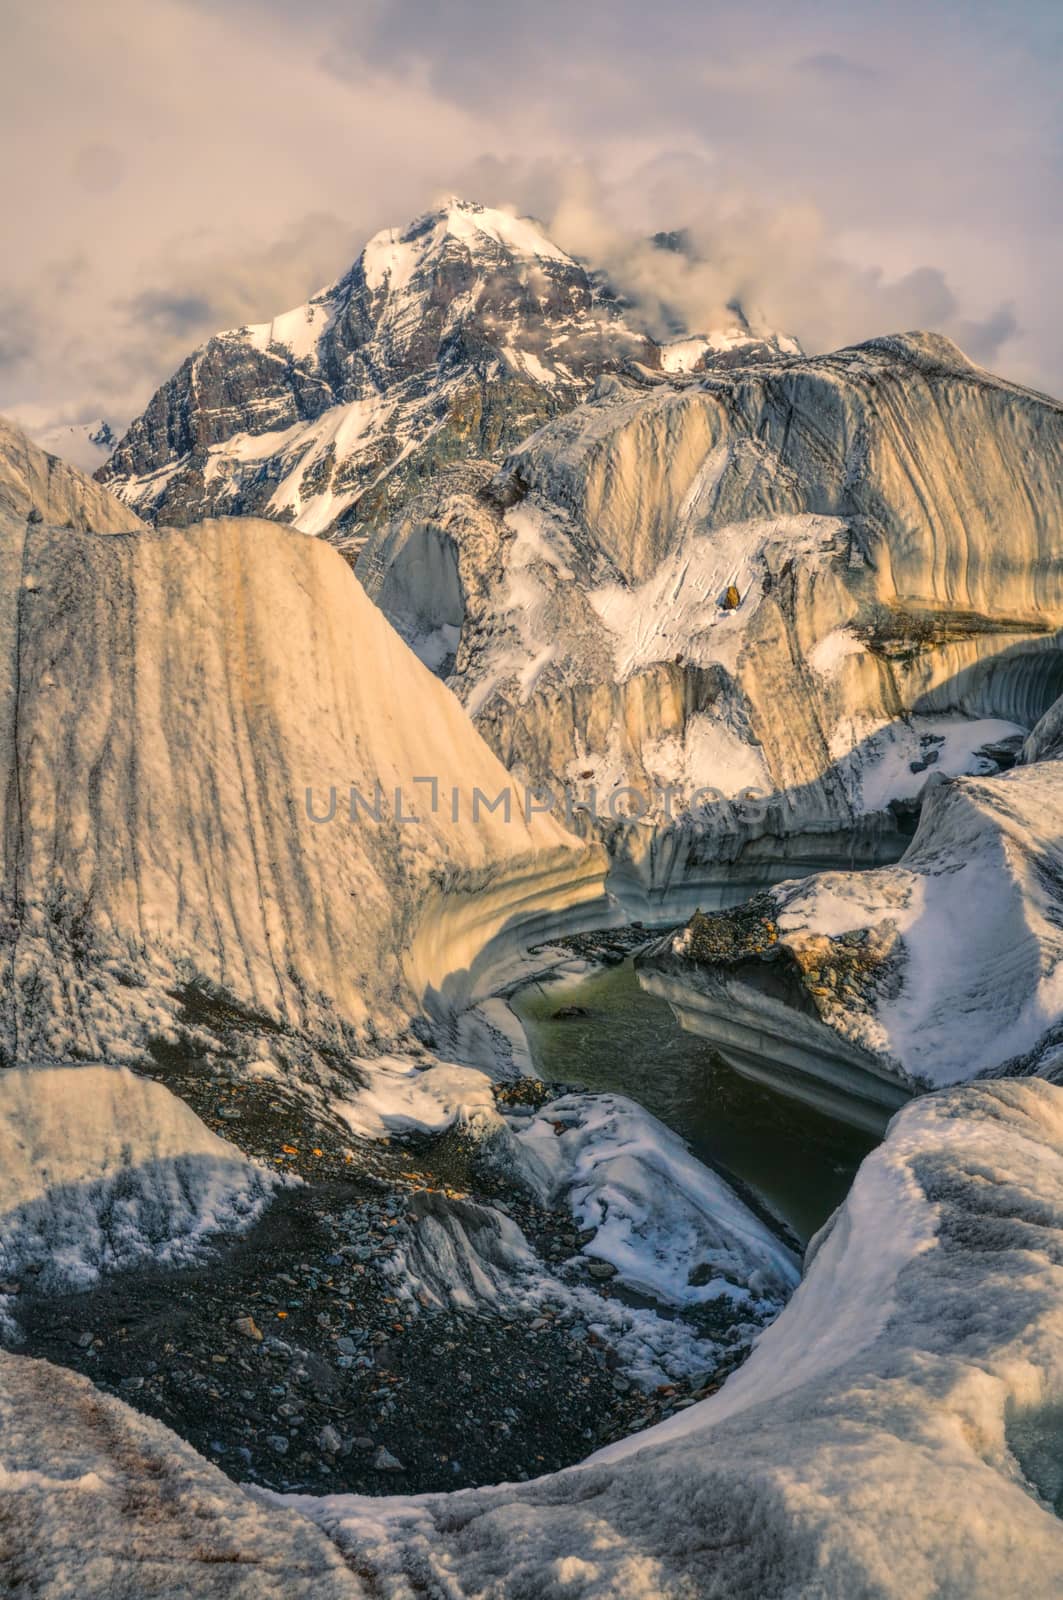 Engilchek glacier by MichalKnitl